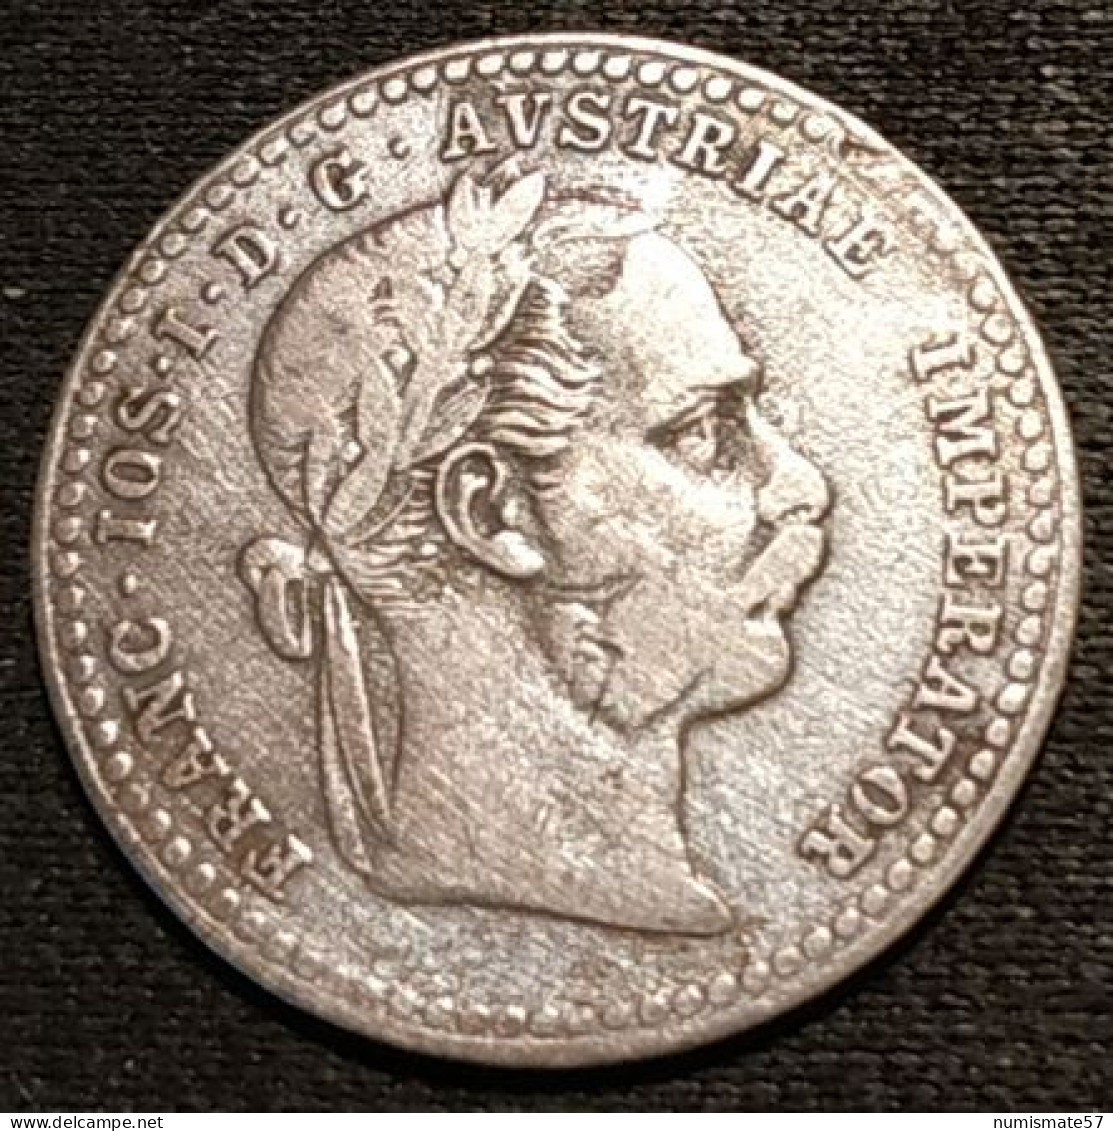 AUTRICHE - AUSTRIA - 10 KREUZER 1870 - Argent - Silver - Franz Joseph I - KM 2206 - Oesterreich